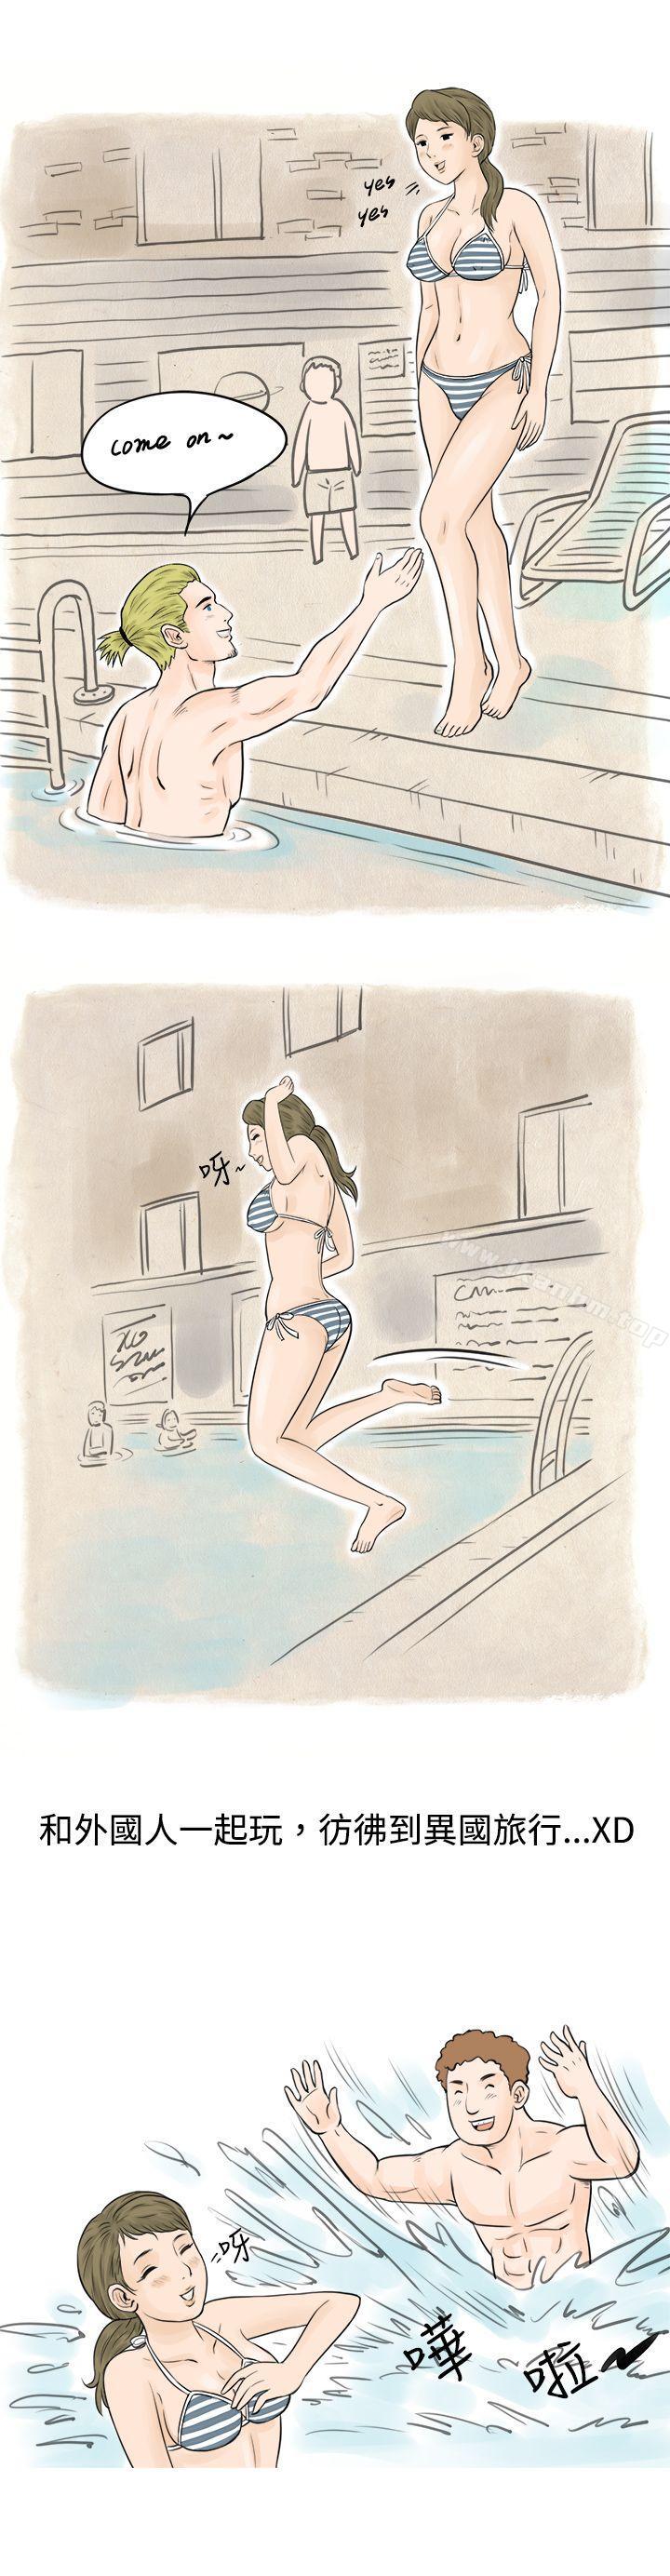 秘密Story 在线观看 秘密Story 在梨泰院遊泳池中的小故事(上) 漫画图片11